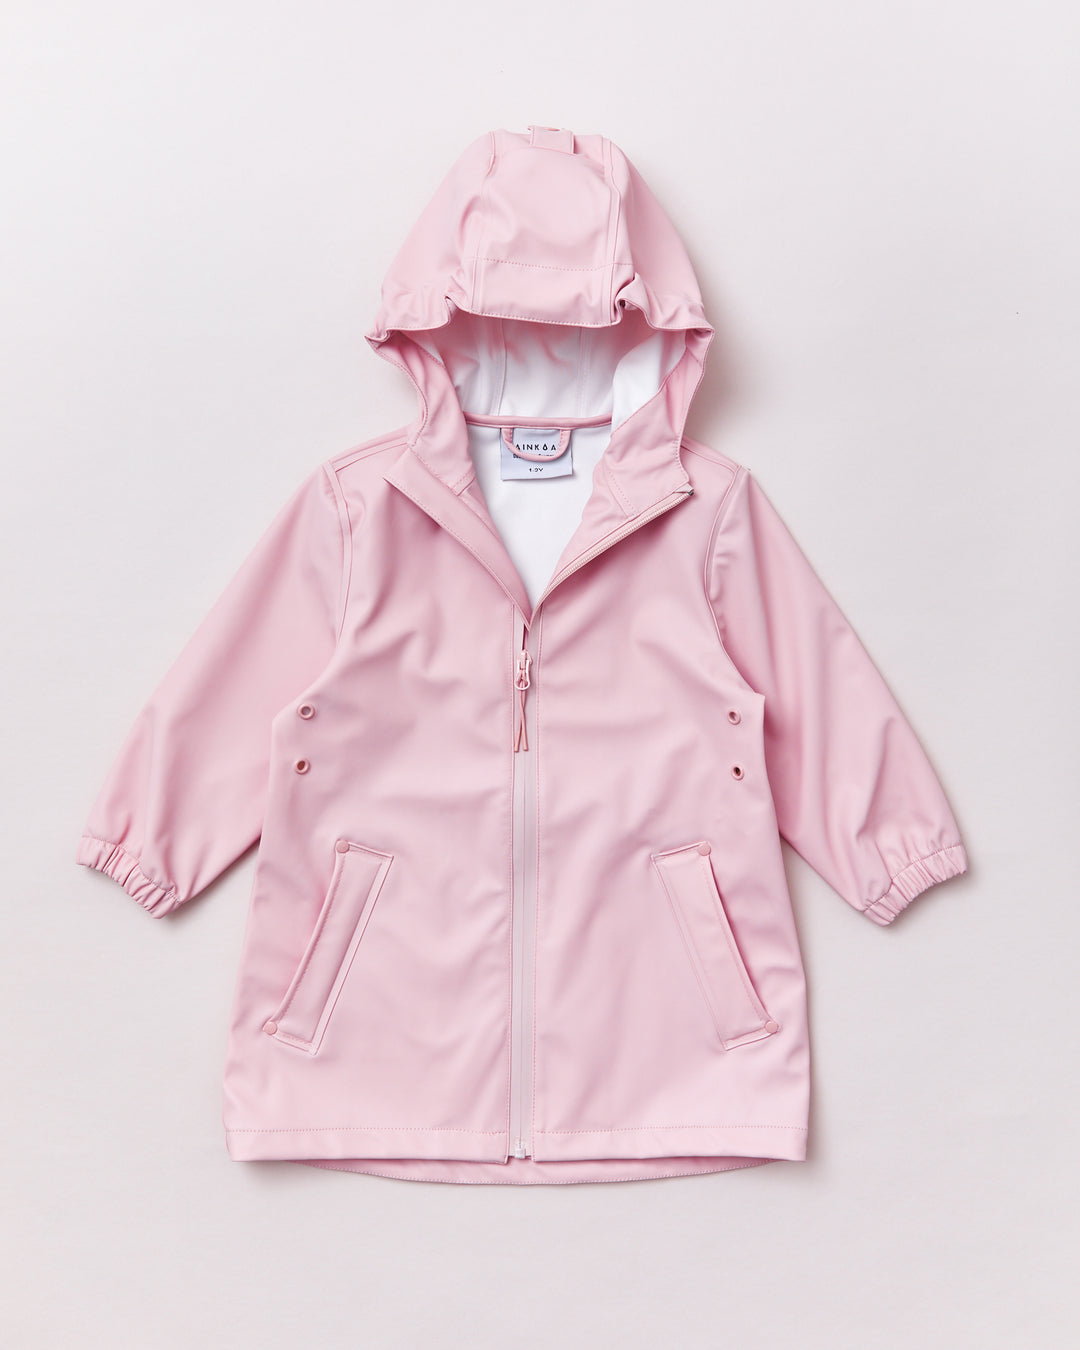 Urban Jacket - Blush Pink